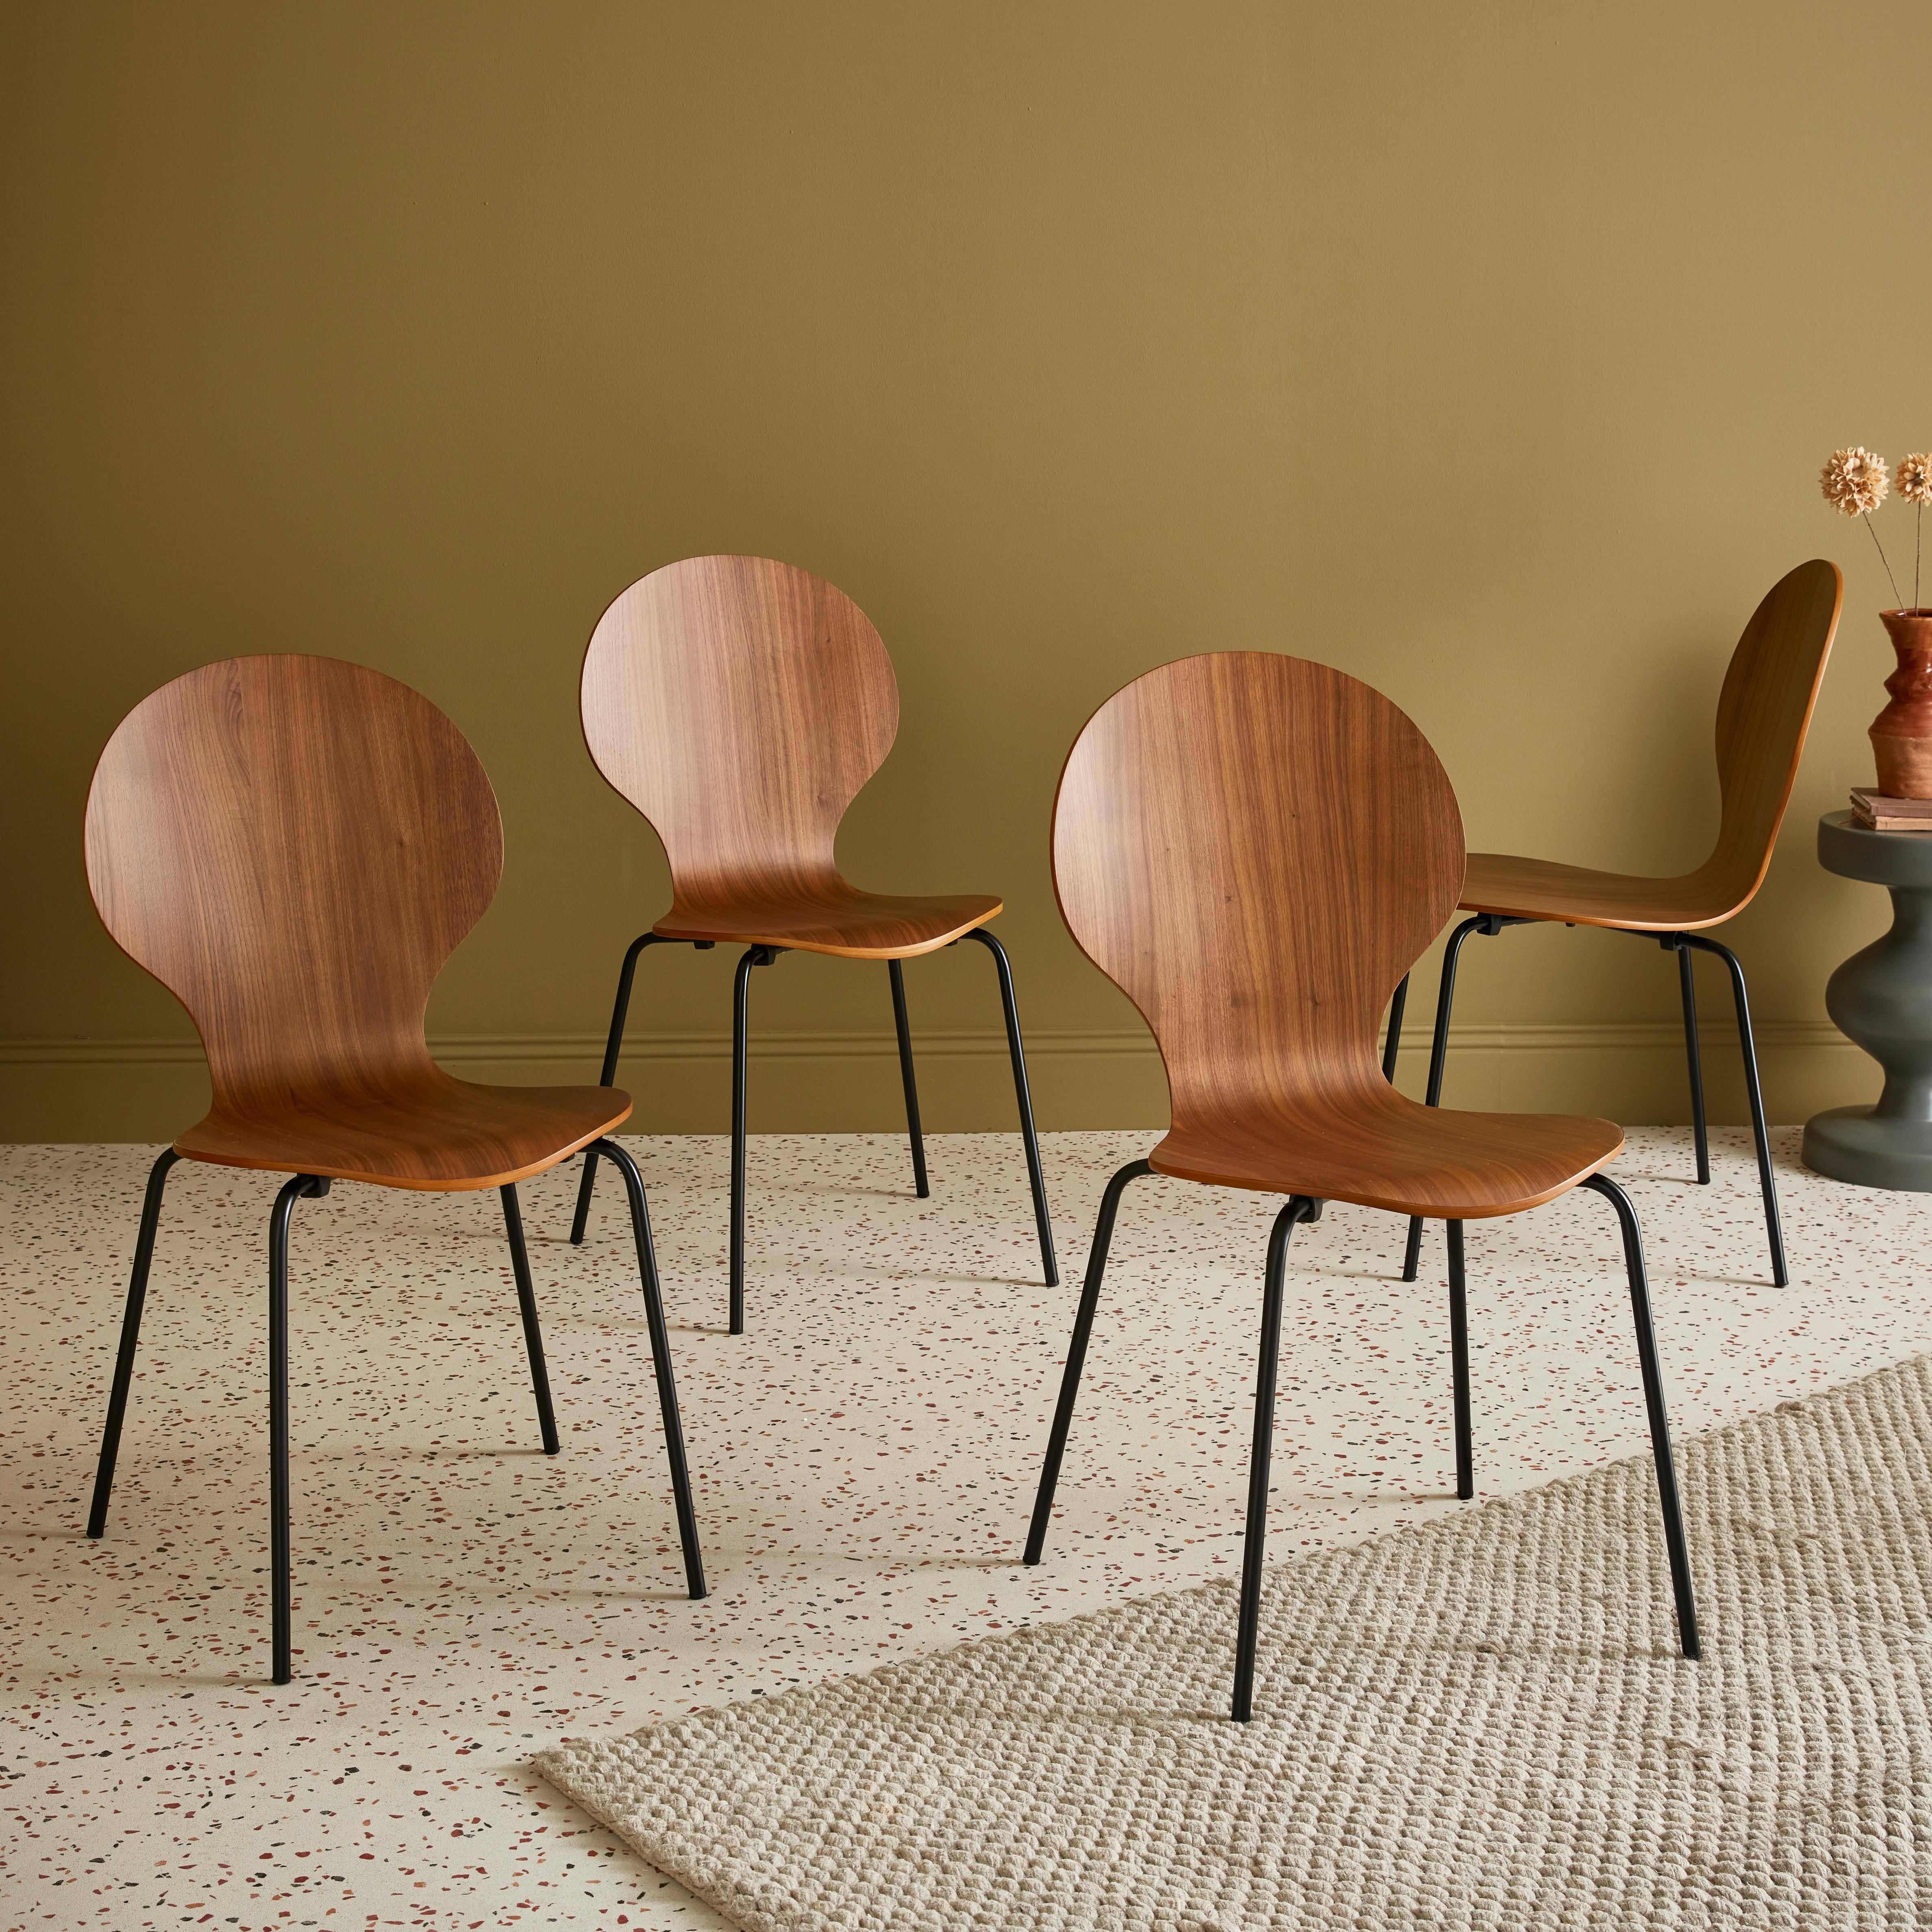 4er Set stapelbare Retro-Stühle in der Farbe Nussbaum,  Hevea-Holz und Sperrholz, Beine aus Stahl, Naomi, B 43 x T 48 x H 87cm Photo1